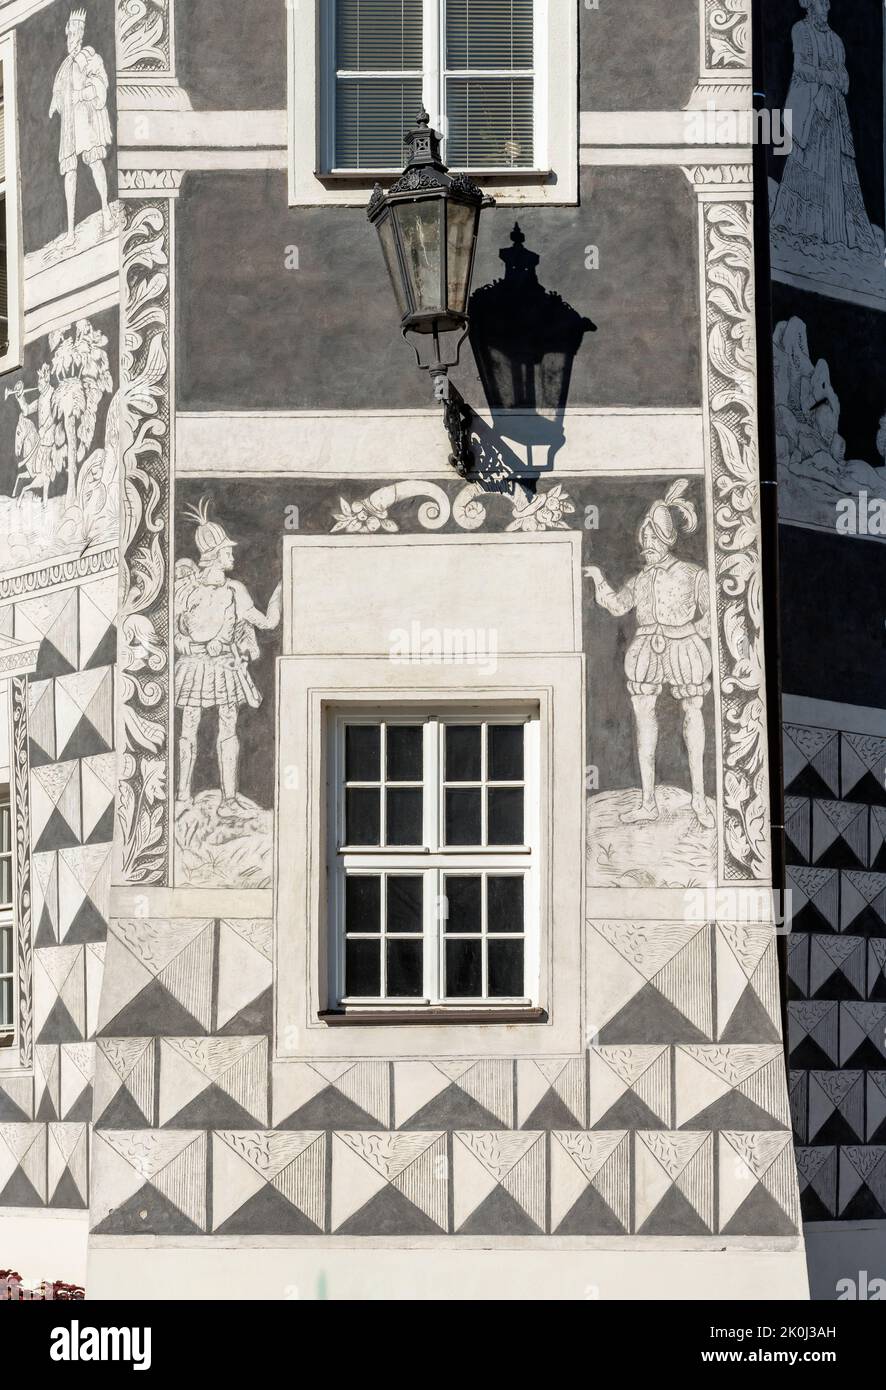 Detalle de la decoración de sgraffito en la fachada de la casa de los Caballeros (U Rytiru), Mikulov, República Checa Foto de stock